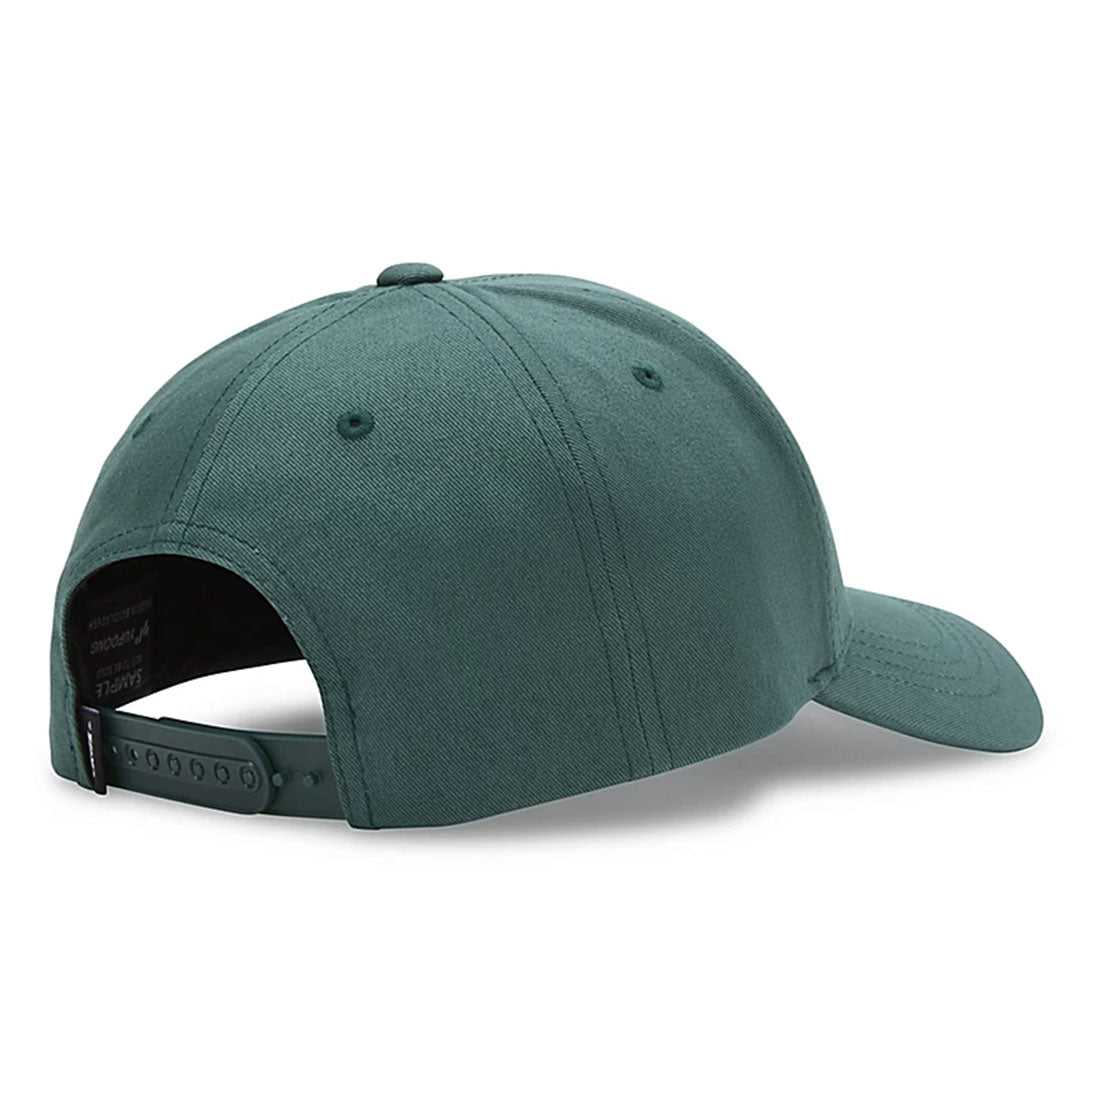 Cappellino Vans - fresh Script hat -Verde